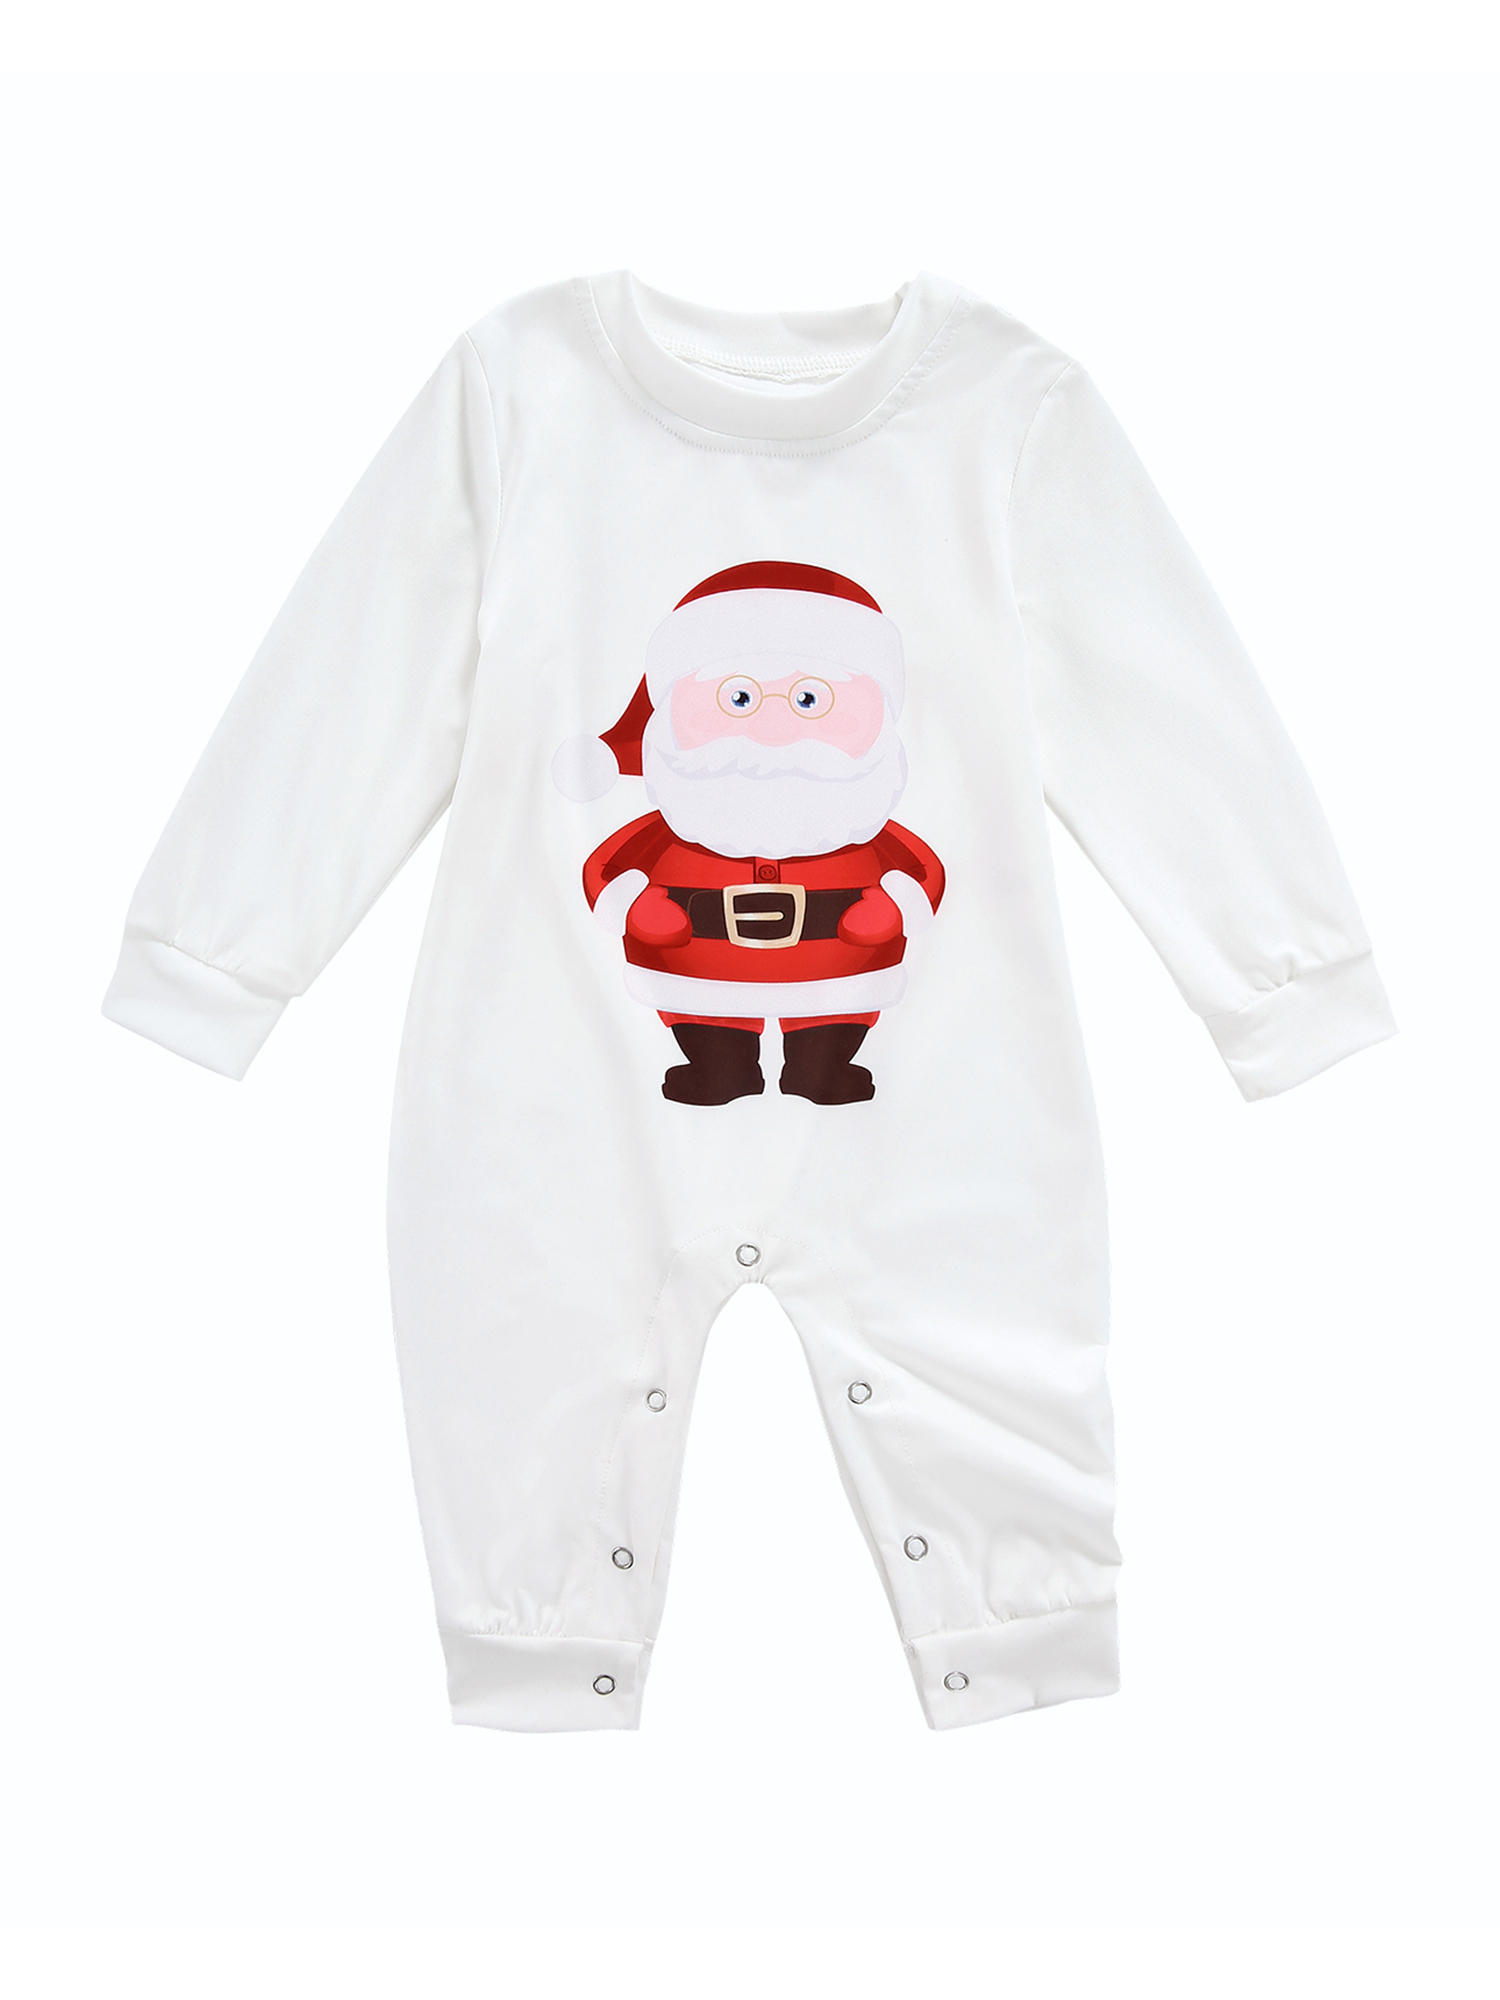 Yinyinxull Family Pajamas Matching Sets Women Men Kids Baby Sleepwear Santa Claus Tops Plaid Pants Pyjamas Homewear - image 4 of 6